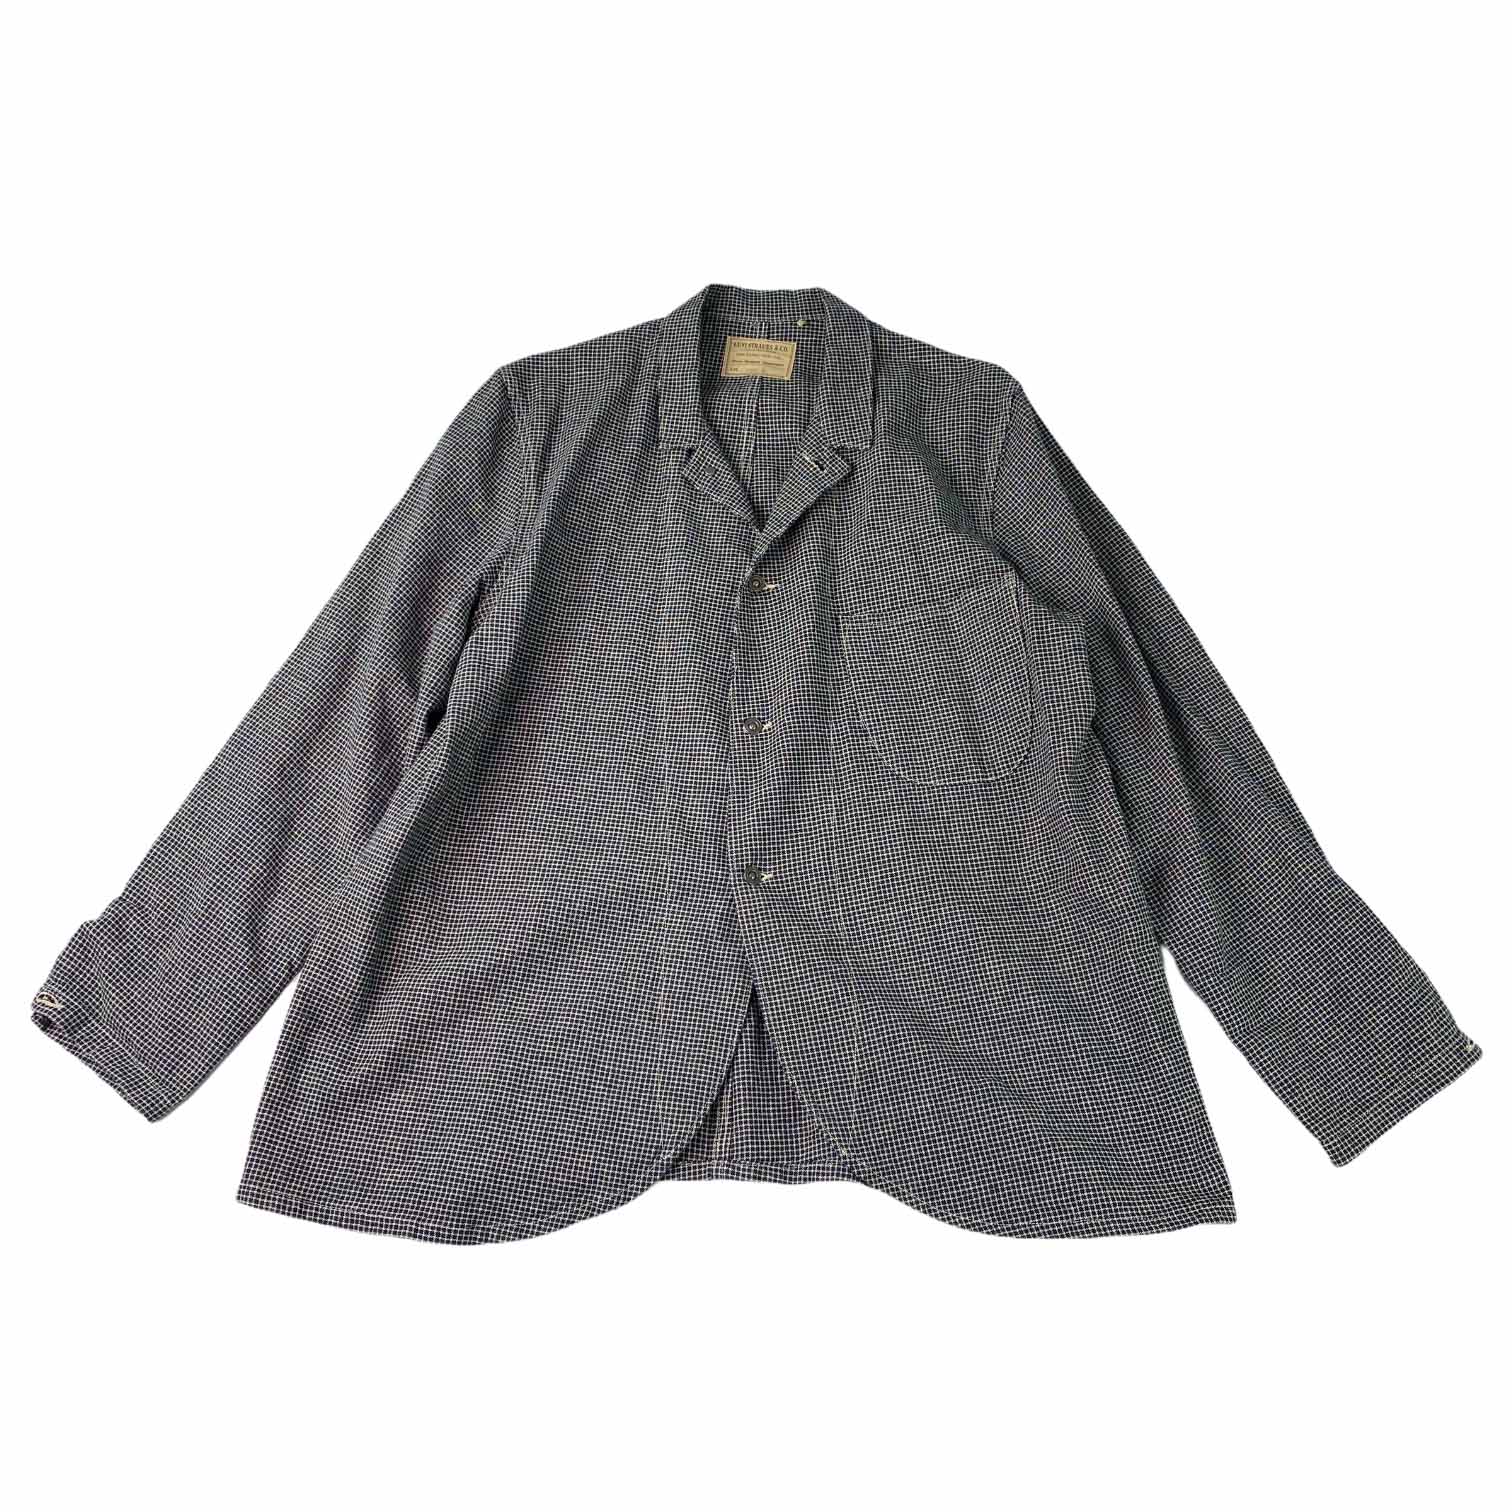 [Levis] Check Jacket - Size M